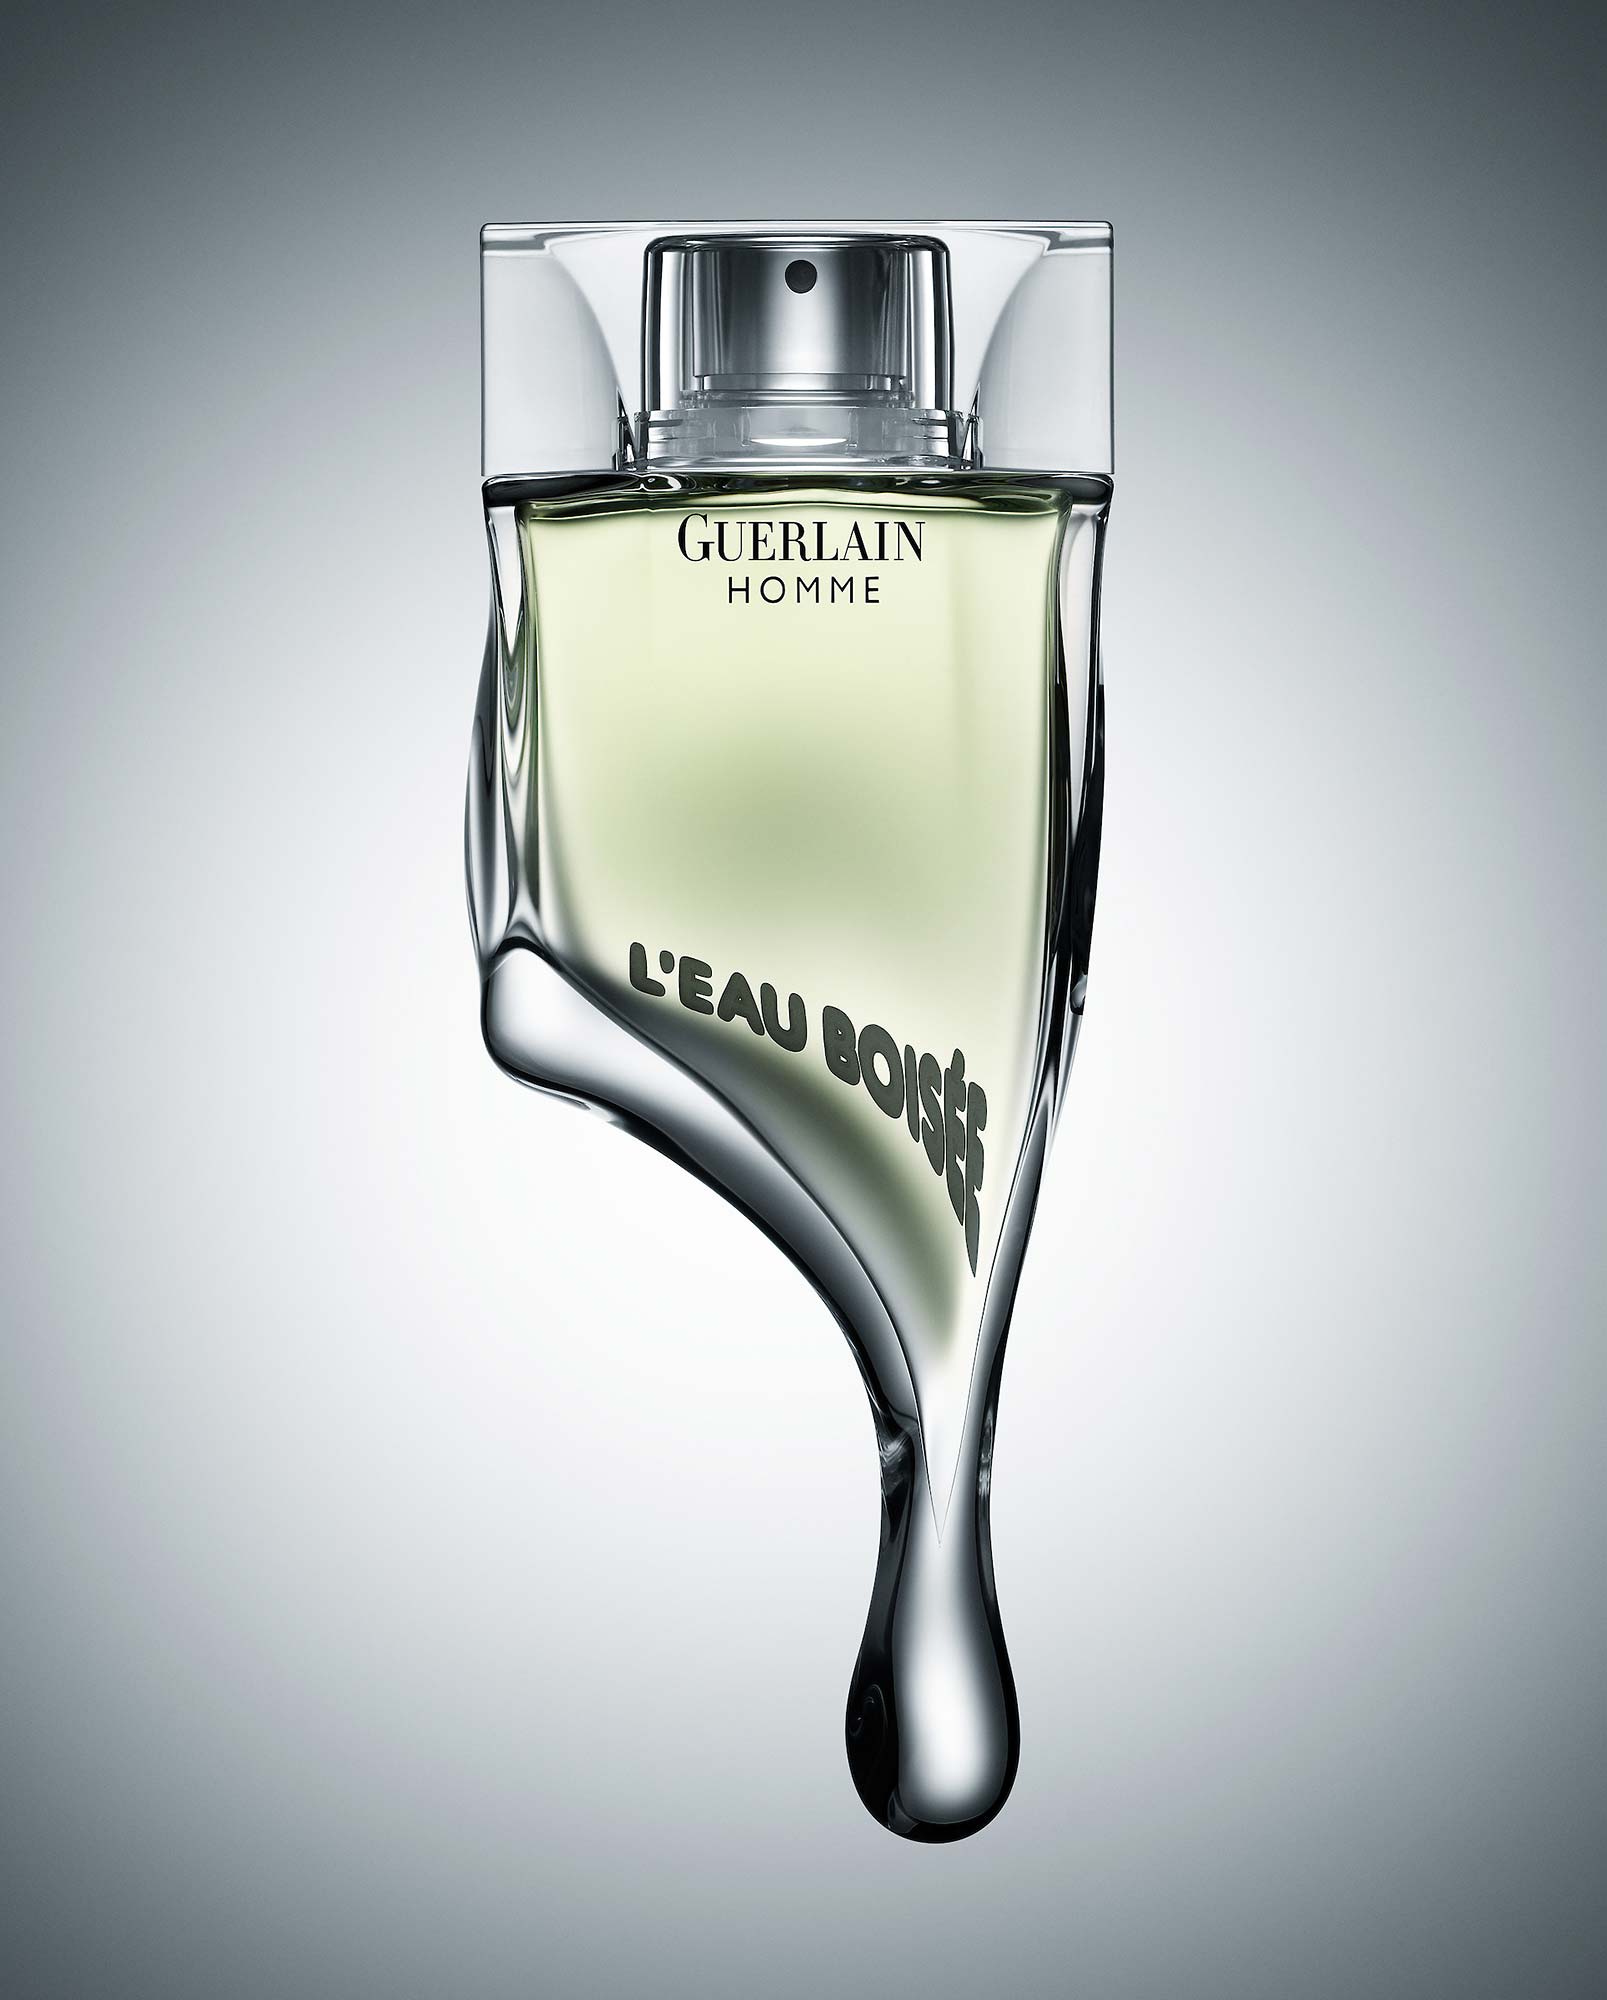 Guerlain parfum